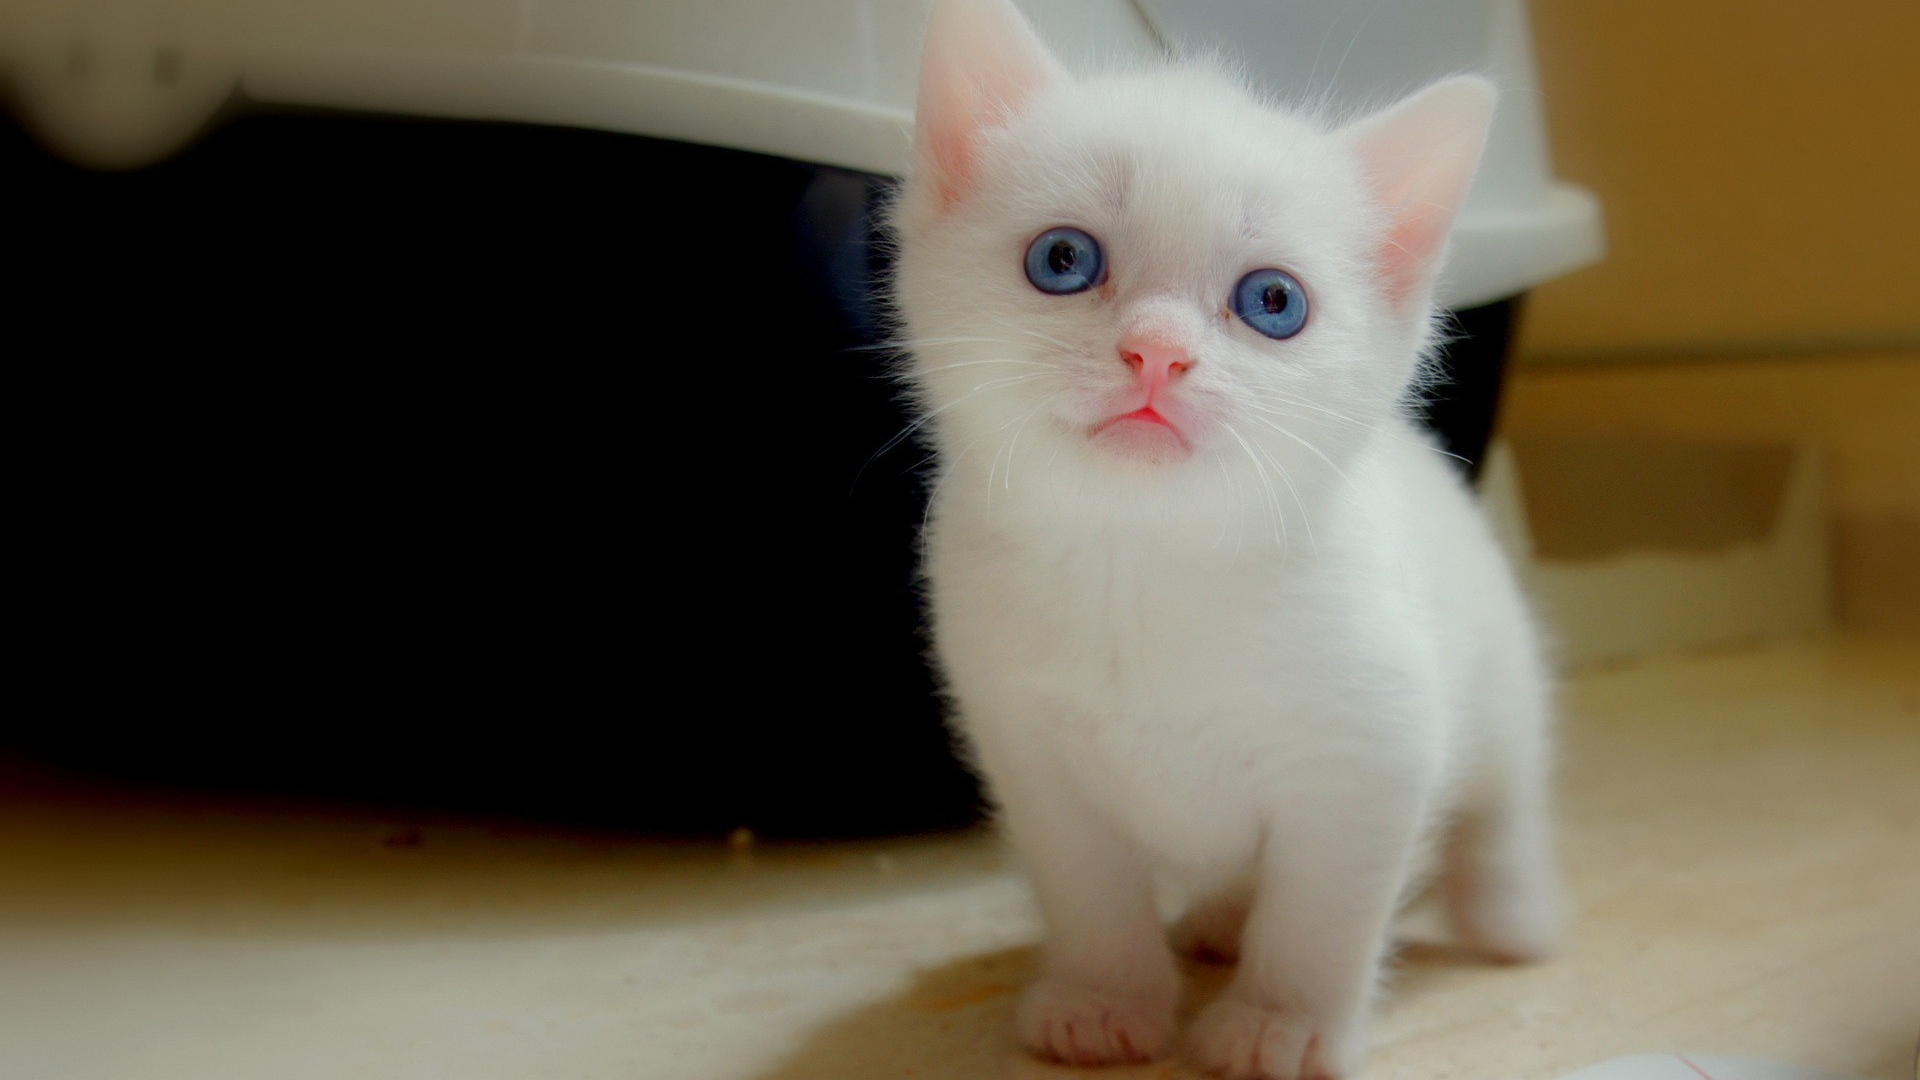 Белый котенок с голубыми глазами